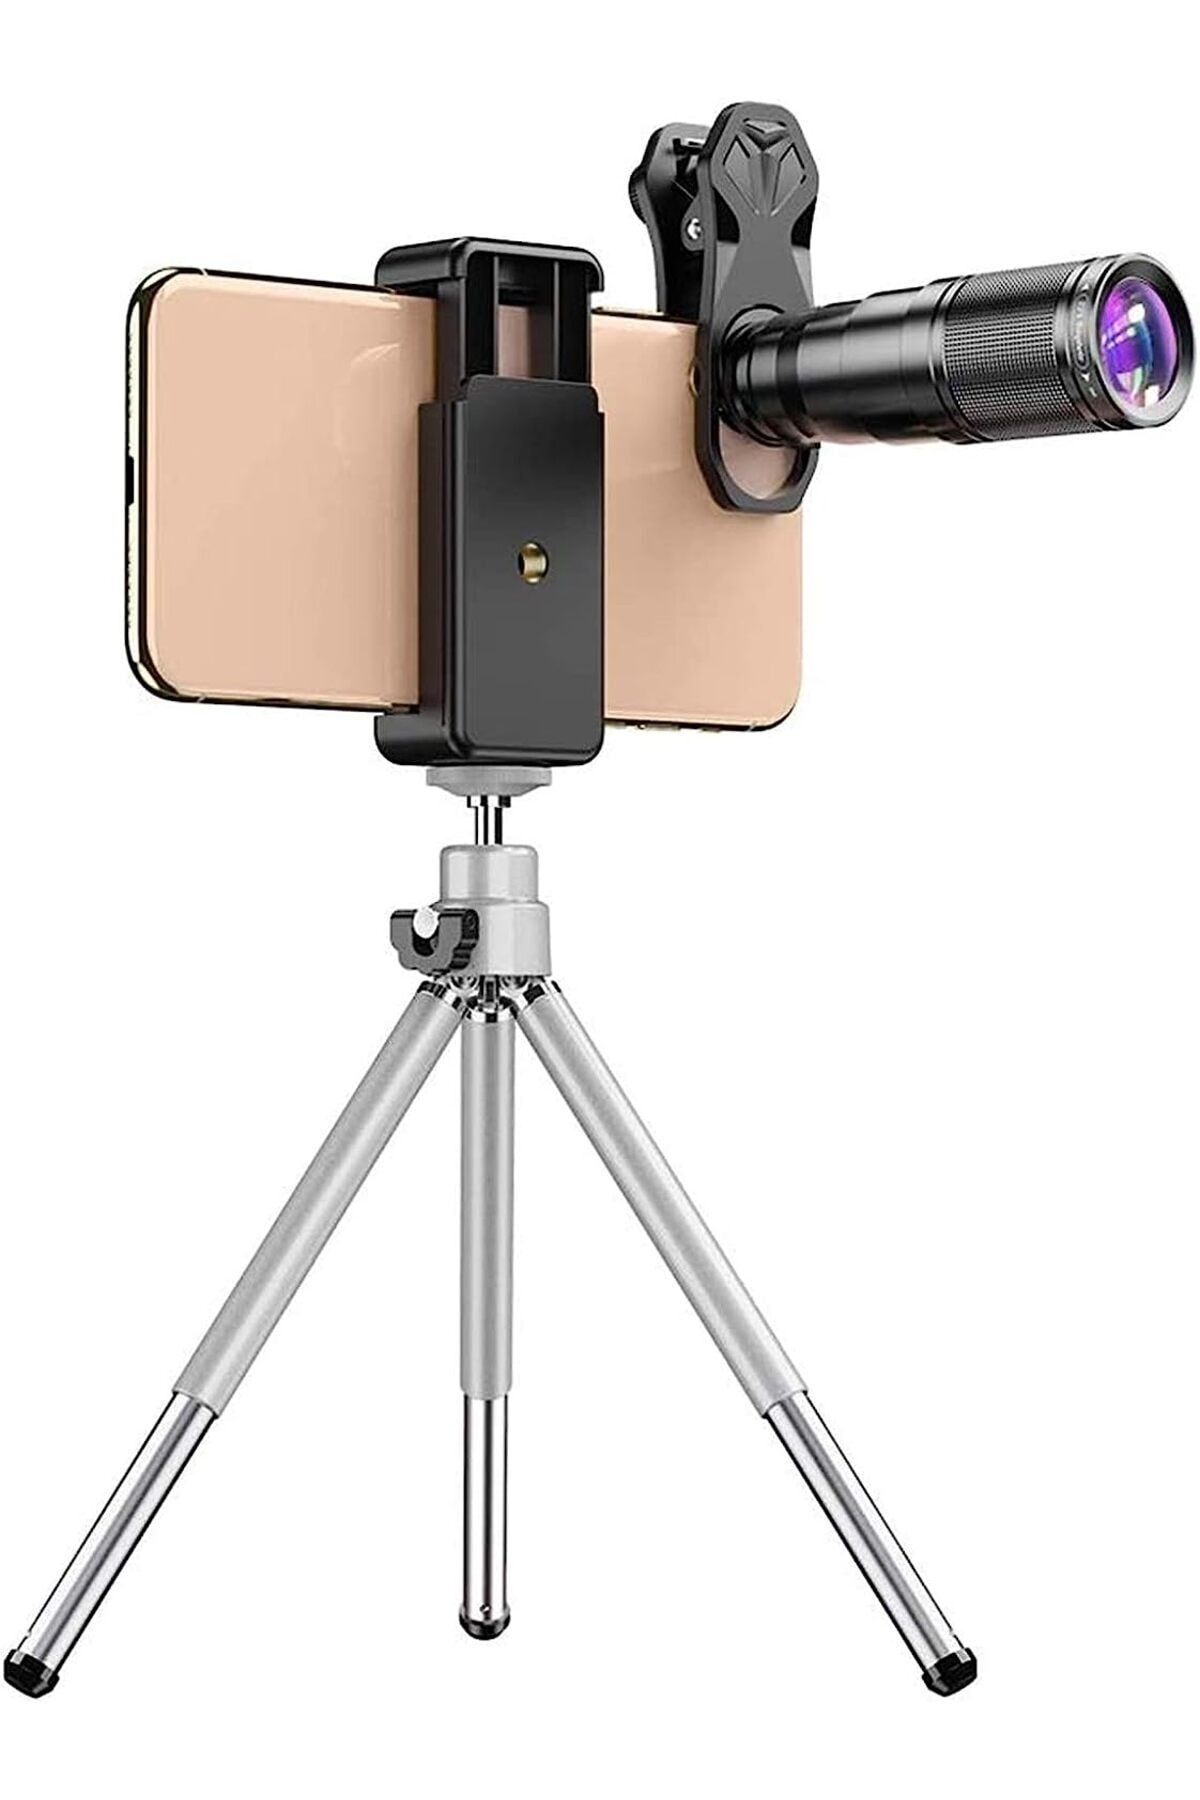 DUHALINE 22X teleskop Zoom Lens makro geniş balıkgözü Lens HD telefon kamera Lens Mobil Fotoğrafçılık Kiti